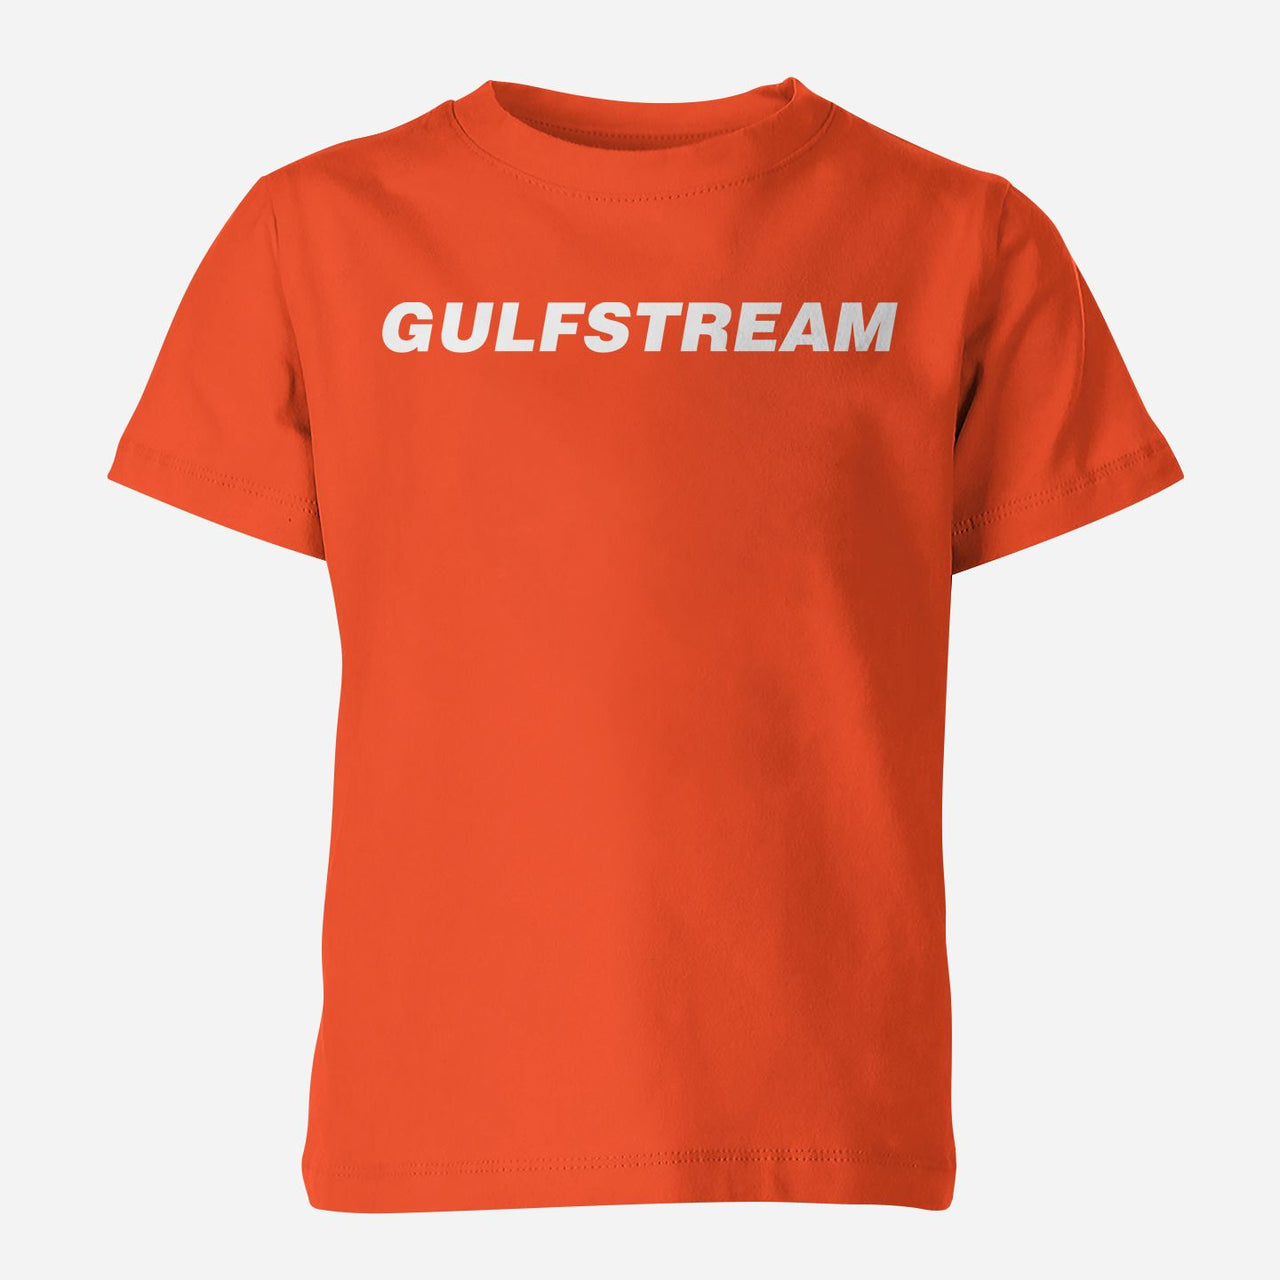 Gulfstream & Text Designed Children T-Shirts